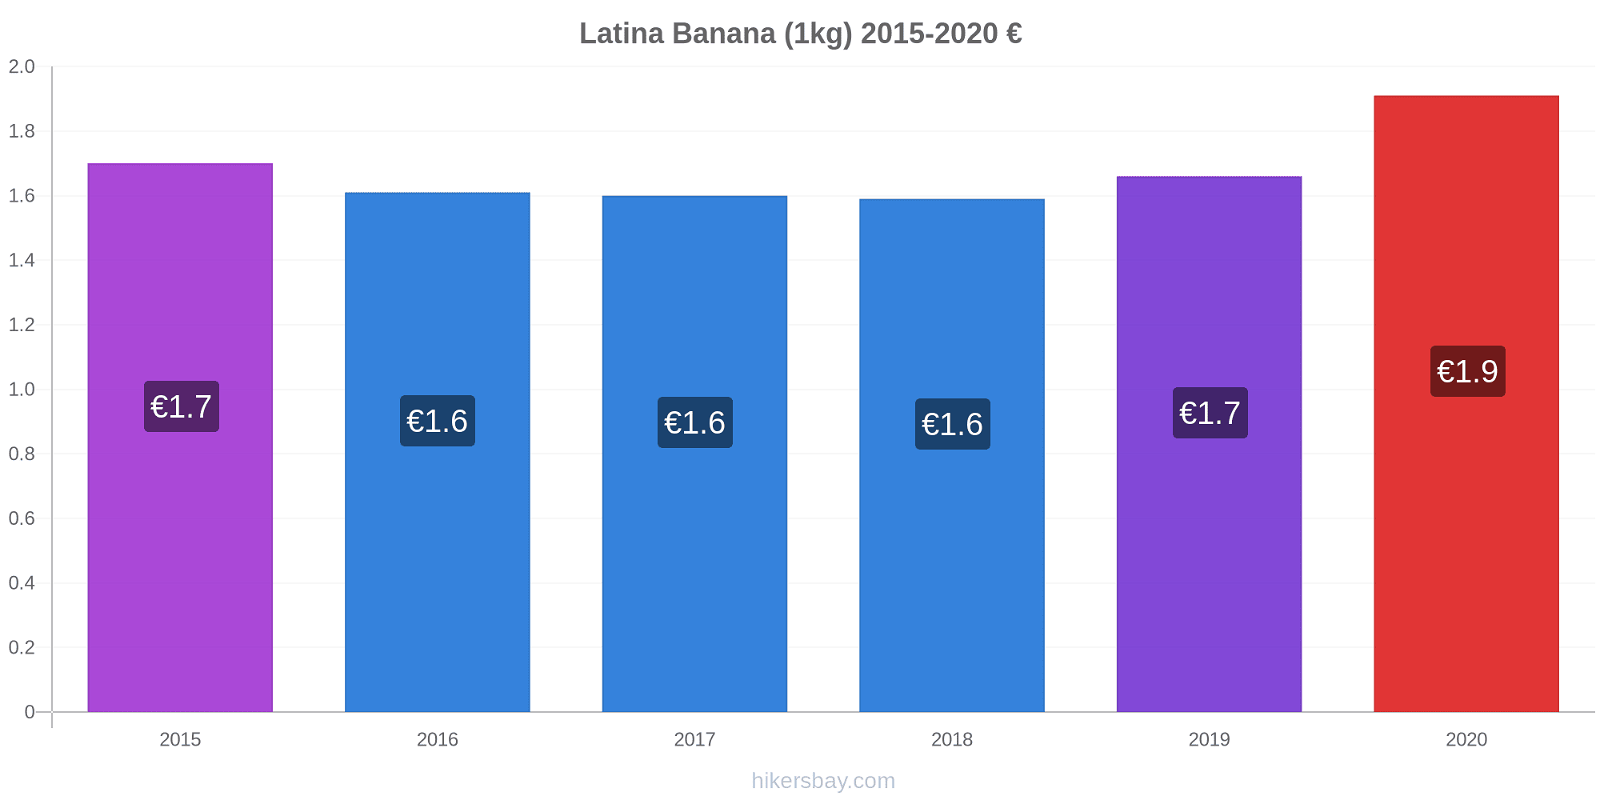 Latina modificări de preț Banana (1kg) hikersbay.com